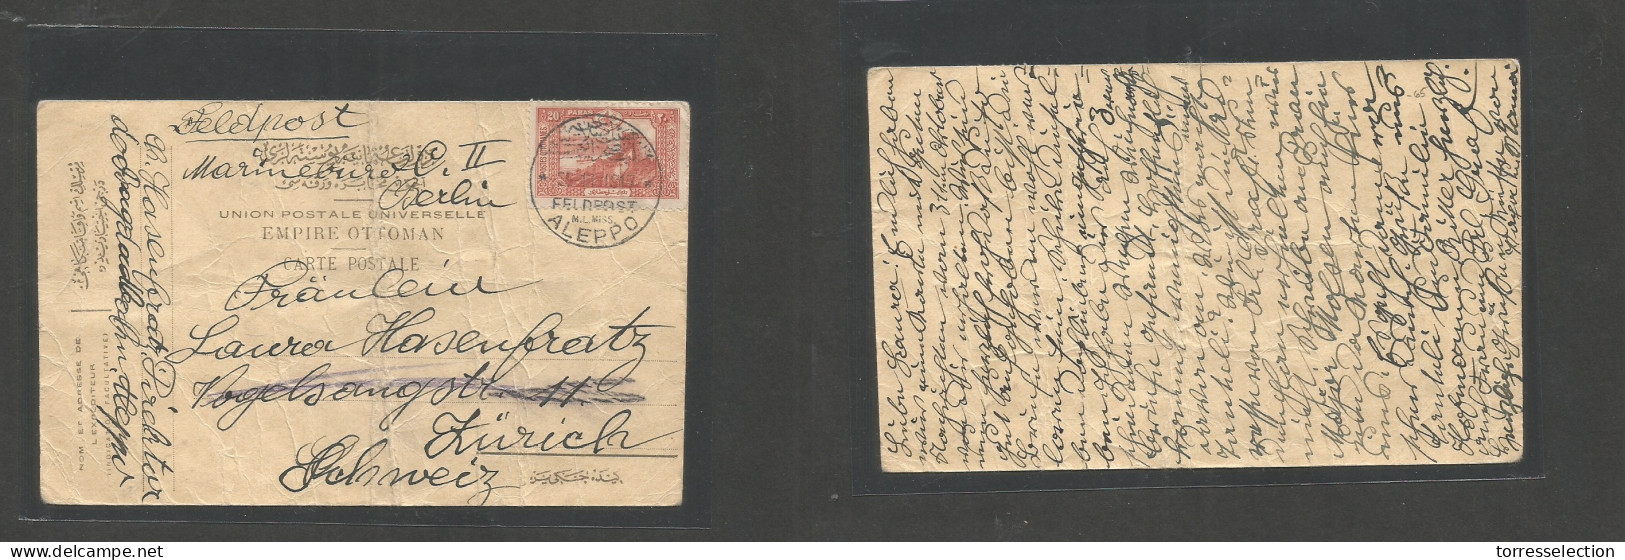 SYRIA. 1917 (11 Sept) Feldpost Mail. Aleppo - Switzerland, Zurich. Fkd Stampless Card, Cds Strike Condition. Fine WWI It - Syrie